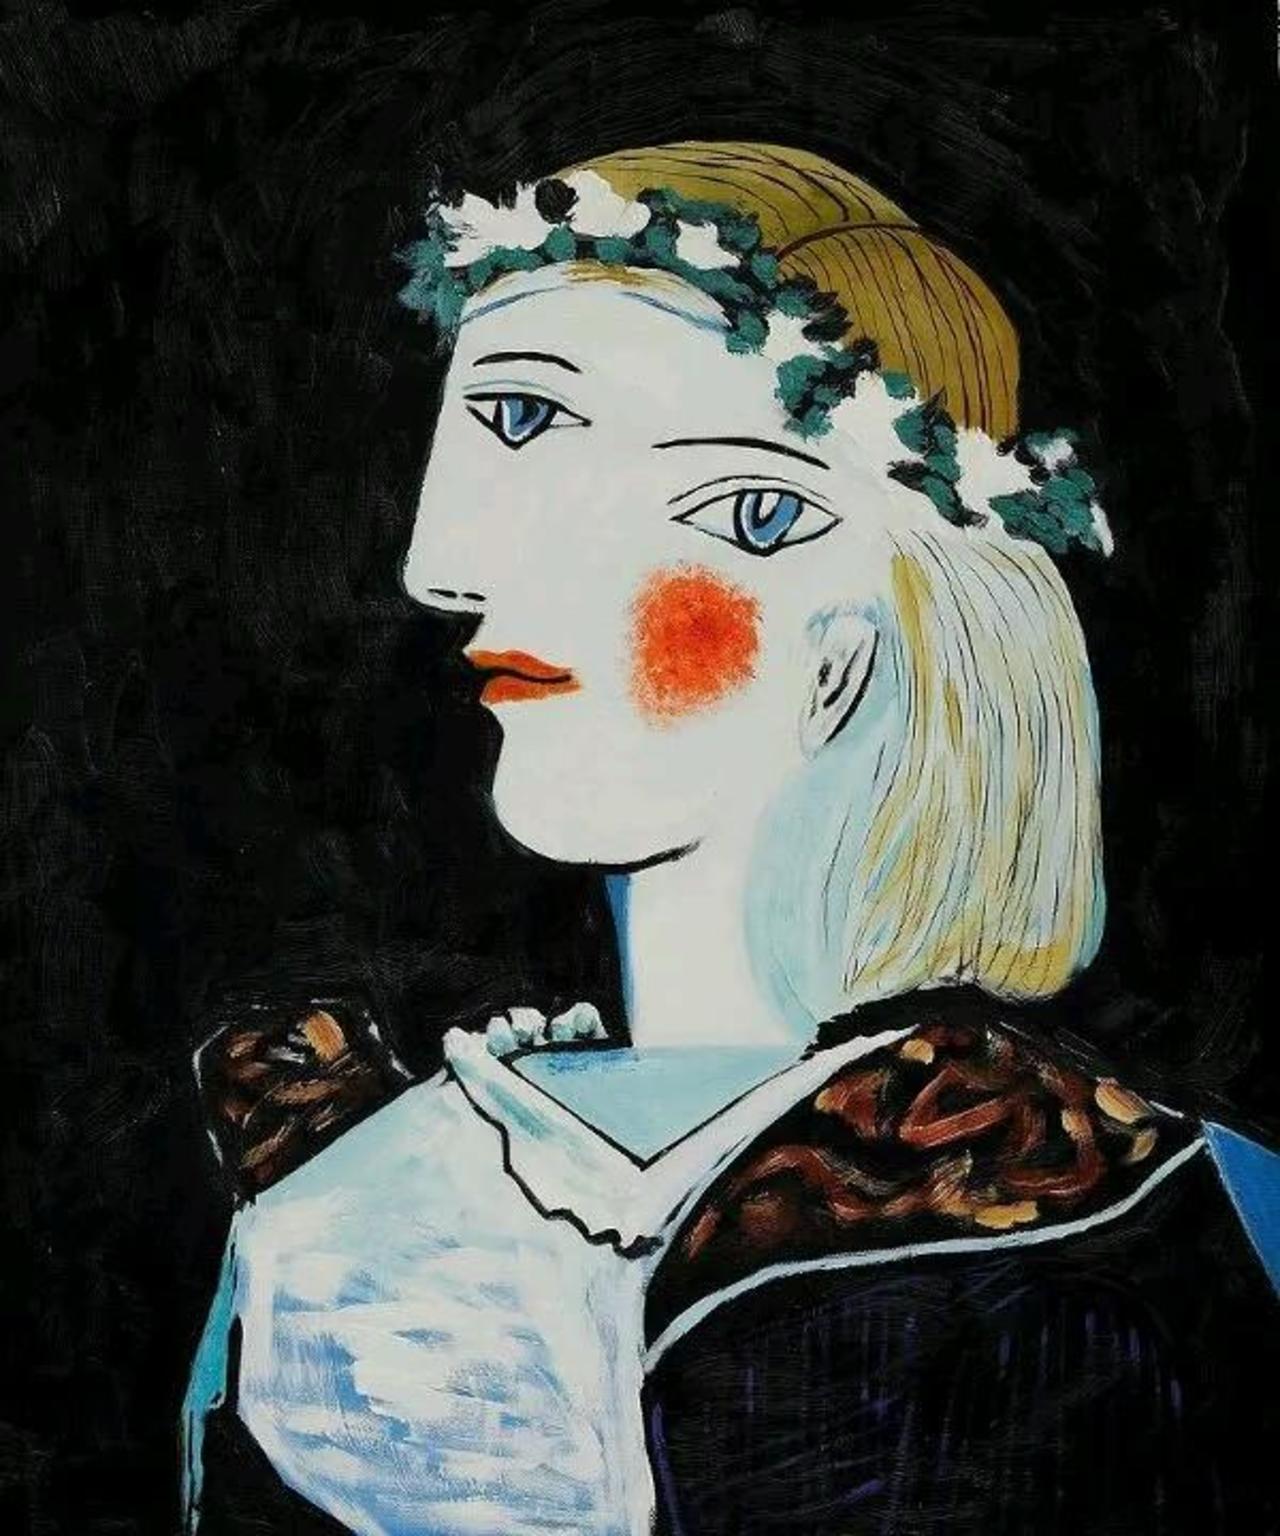 Pablo Picasso - siamo tutti dei doppi? 
Buongiorno #Art #twitart #ArtLovers 
@circeanna @alecoscino @redne2013 @MP27_ http://t.co/AUHY3YDG88